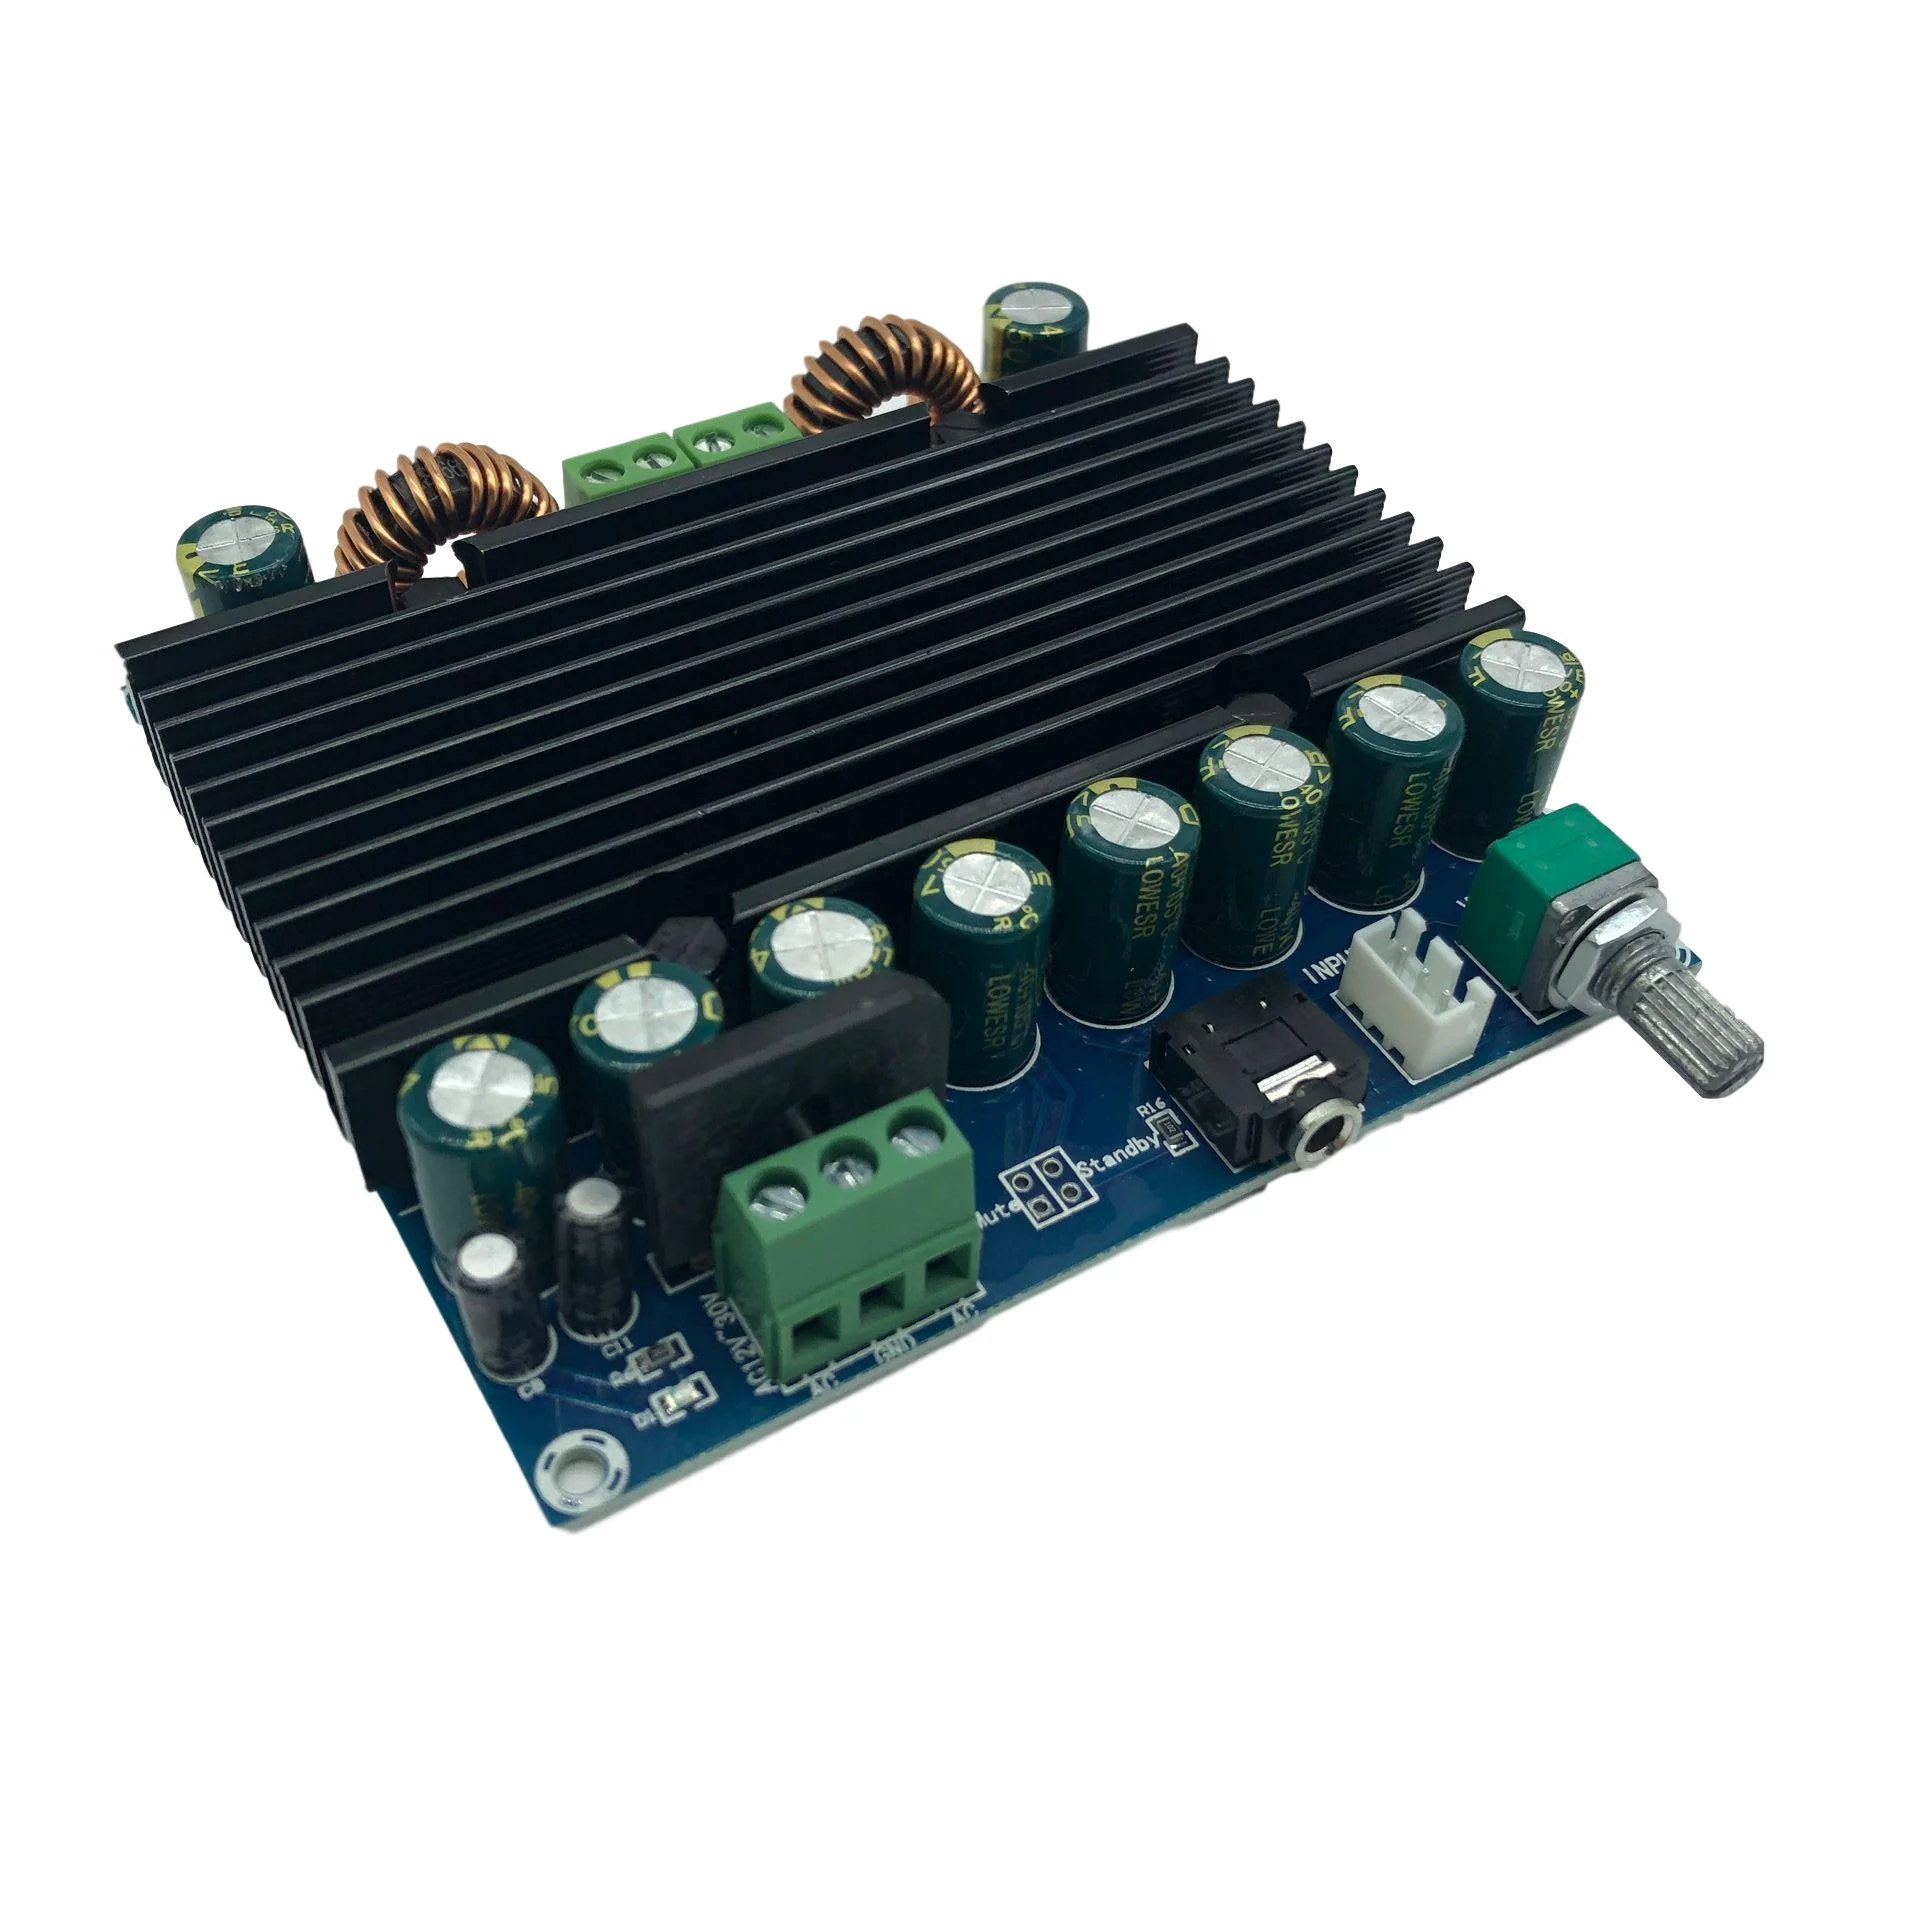 

Hot XH-M251 Super Power Digital Practical Power Amplifier Board TDA8954 Core Dual 210W+210W Power Supply AC 12-28V